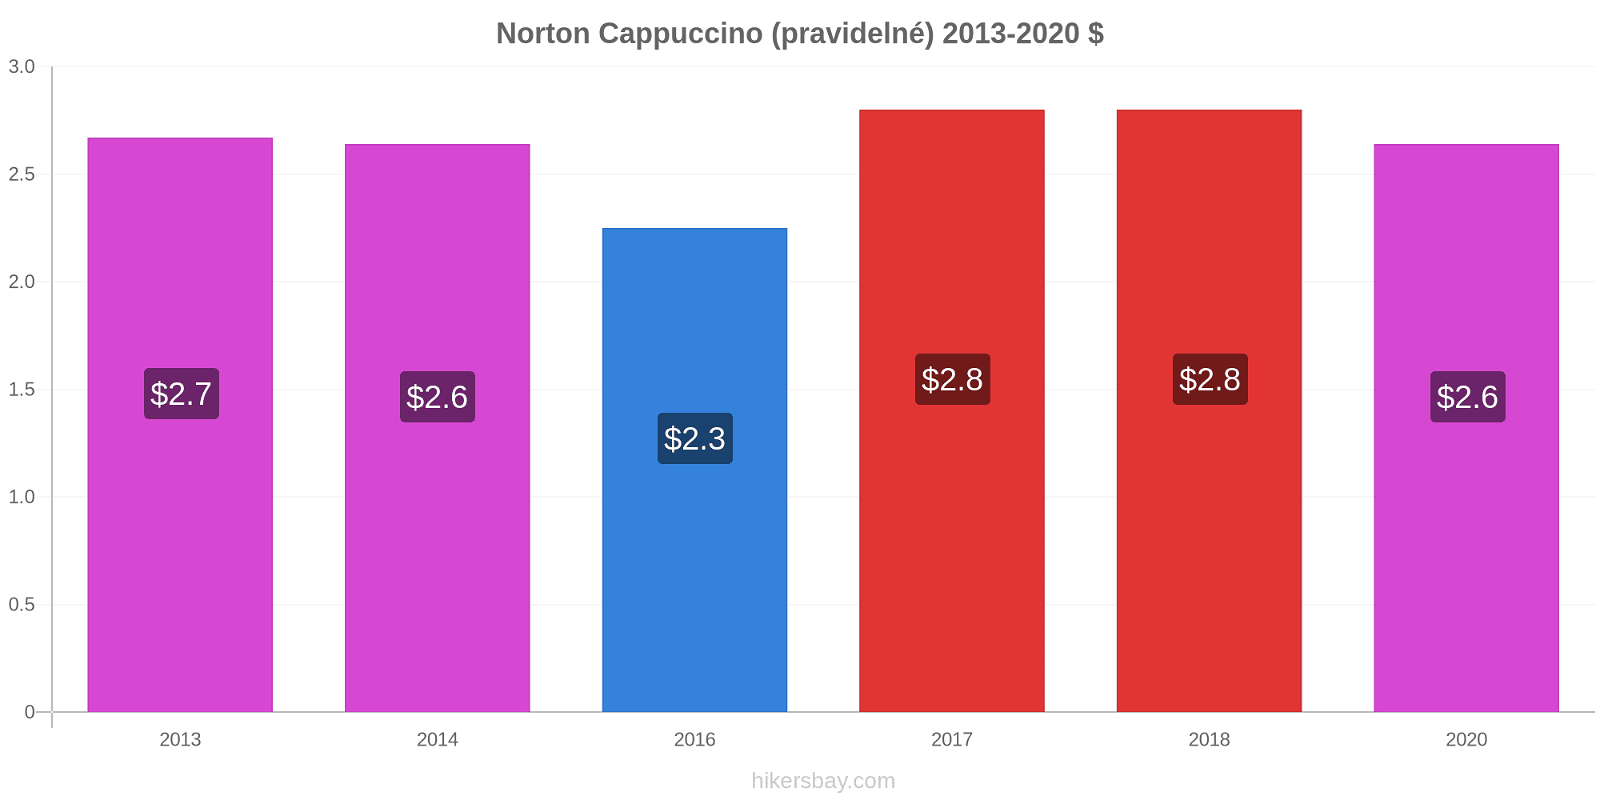 Norton změny cen Cappuccino (pravidelné) hikersbay.com